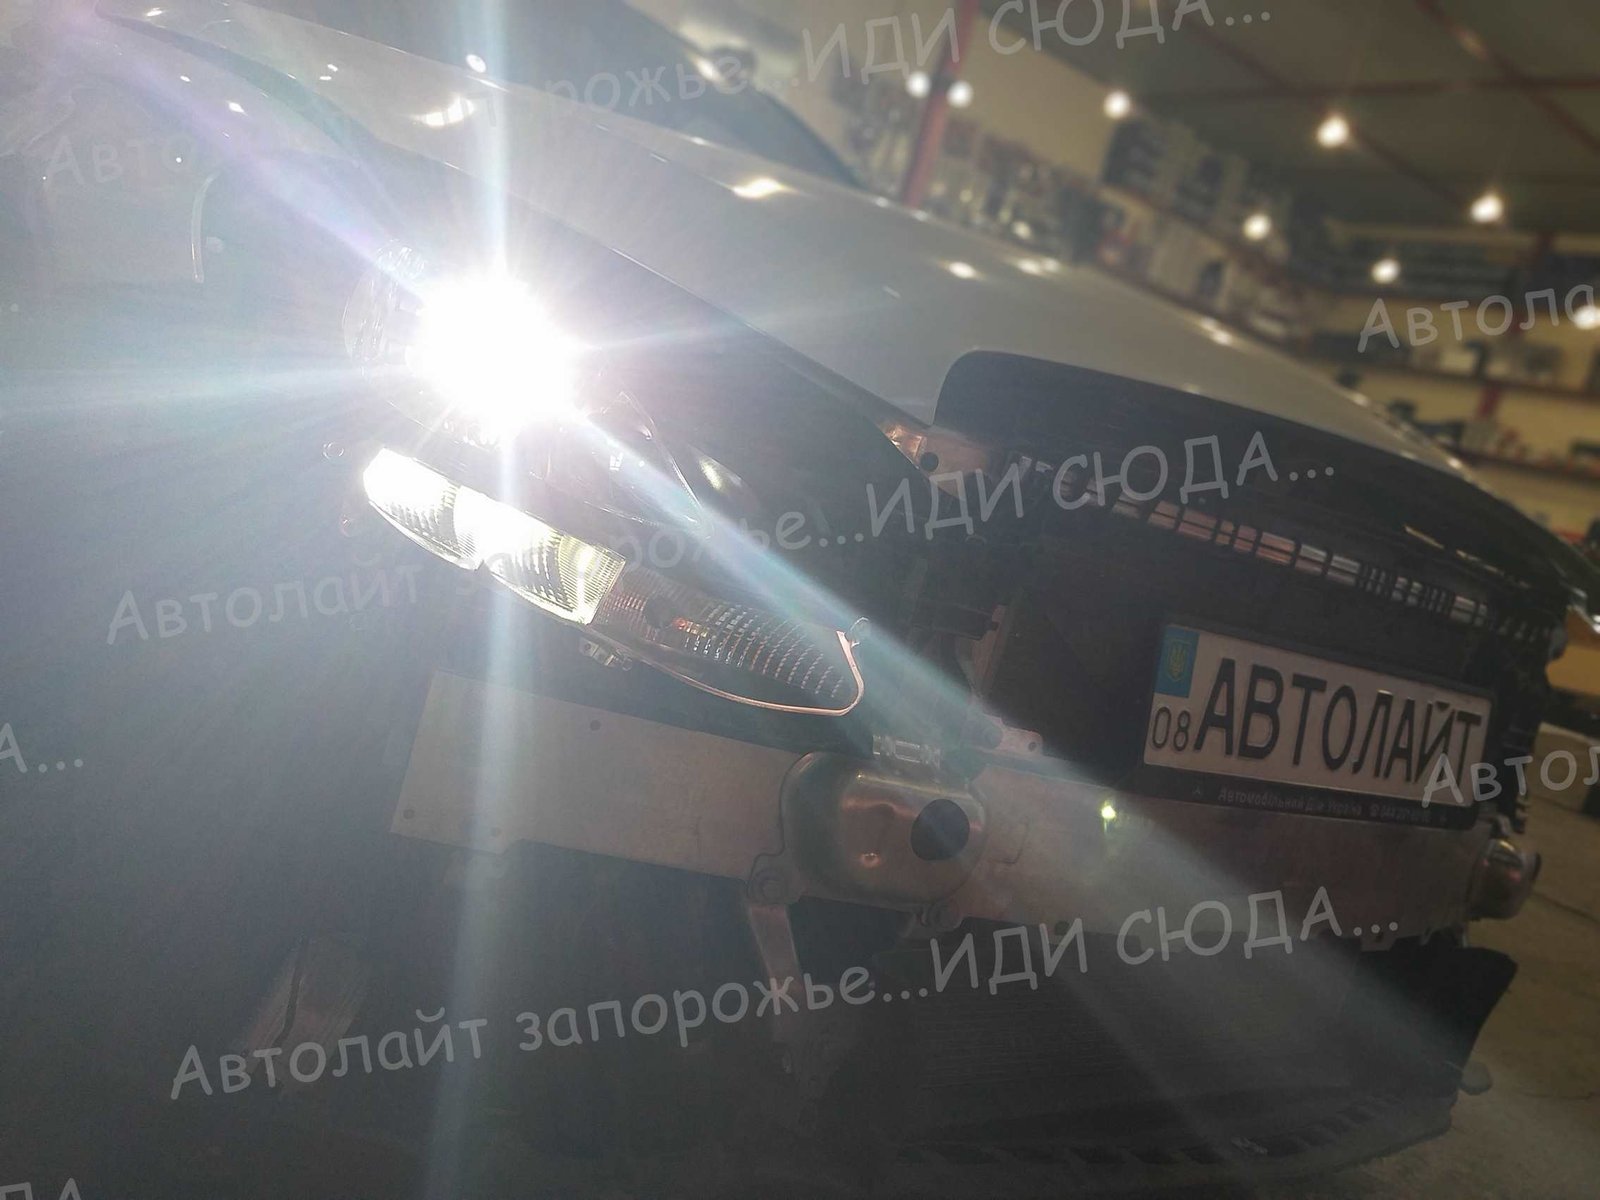 Фотогалерея автосвет 32 🚩AVTOLIGHT🚩КАЧЕСТВО 💯‼ студия "Автолайт" Качественный автосвет в Запорожье